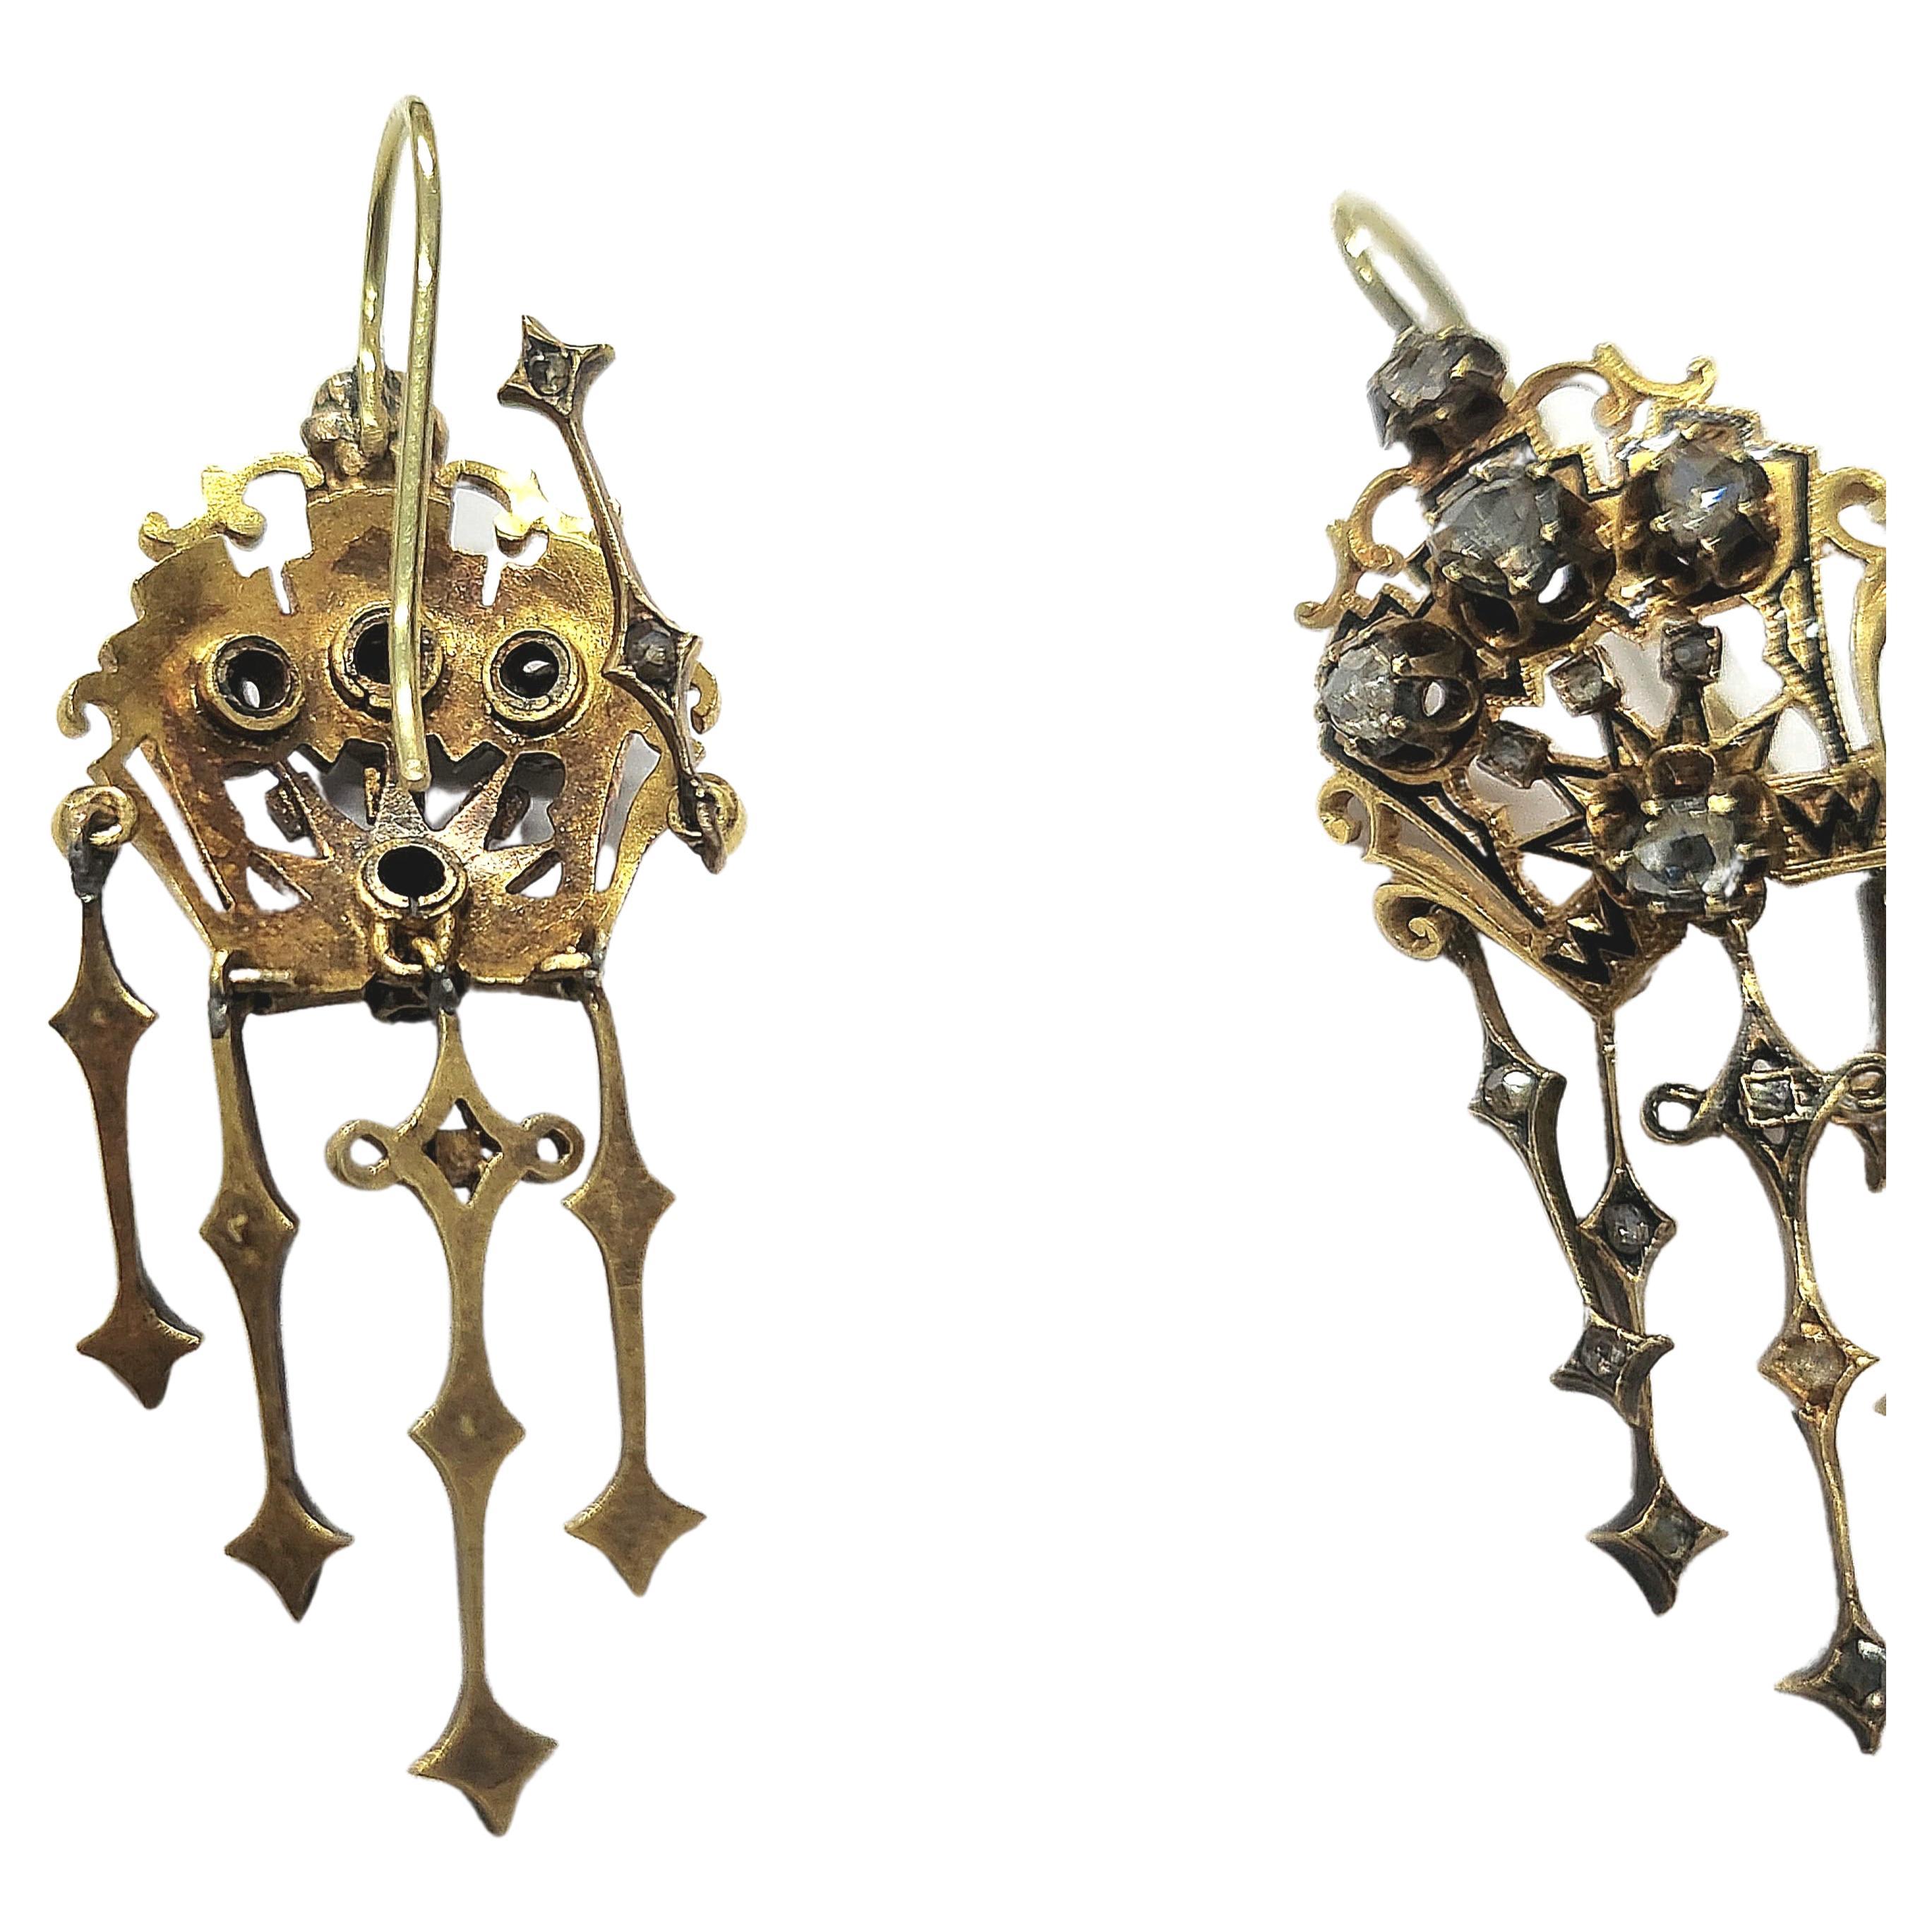 1850s earrings